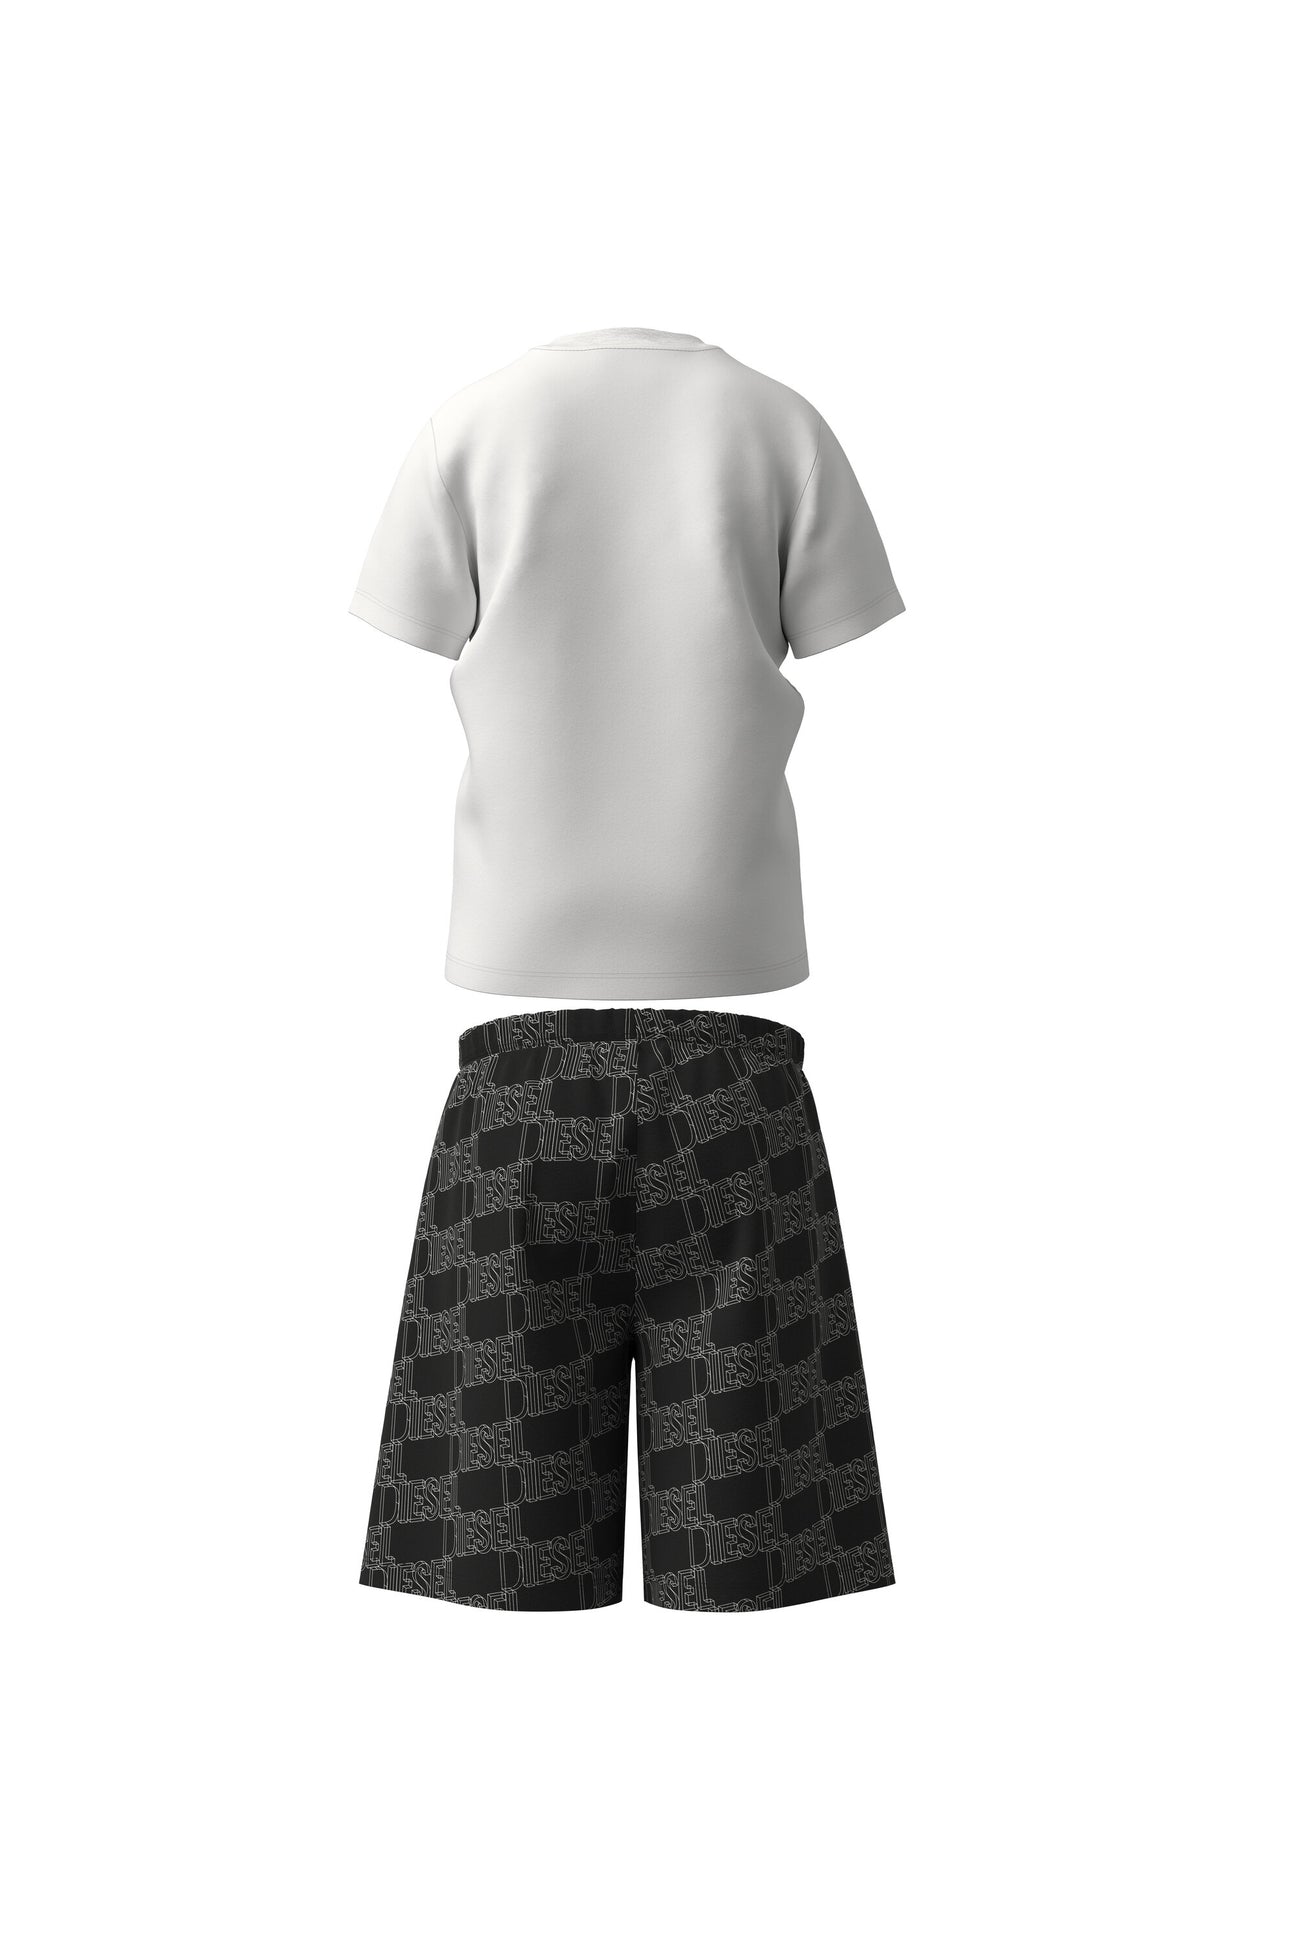 Pijama corto de jersey blanco y negro con logotipo Pijama corto de jersey blanco y negro con logotipo